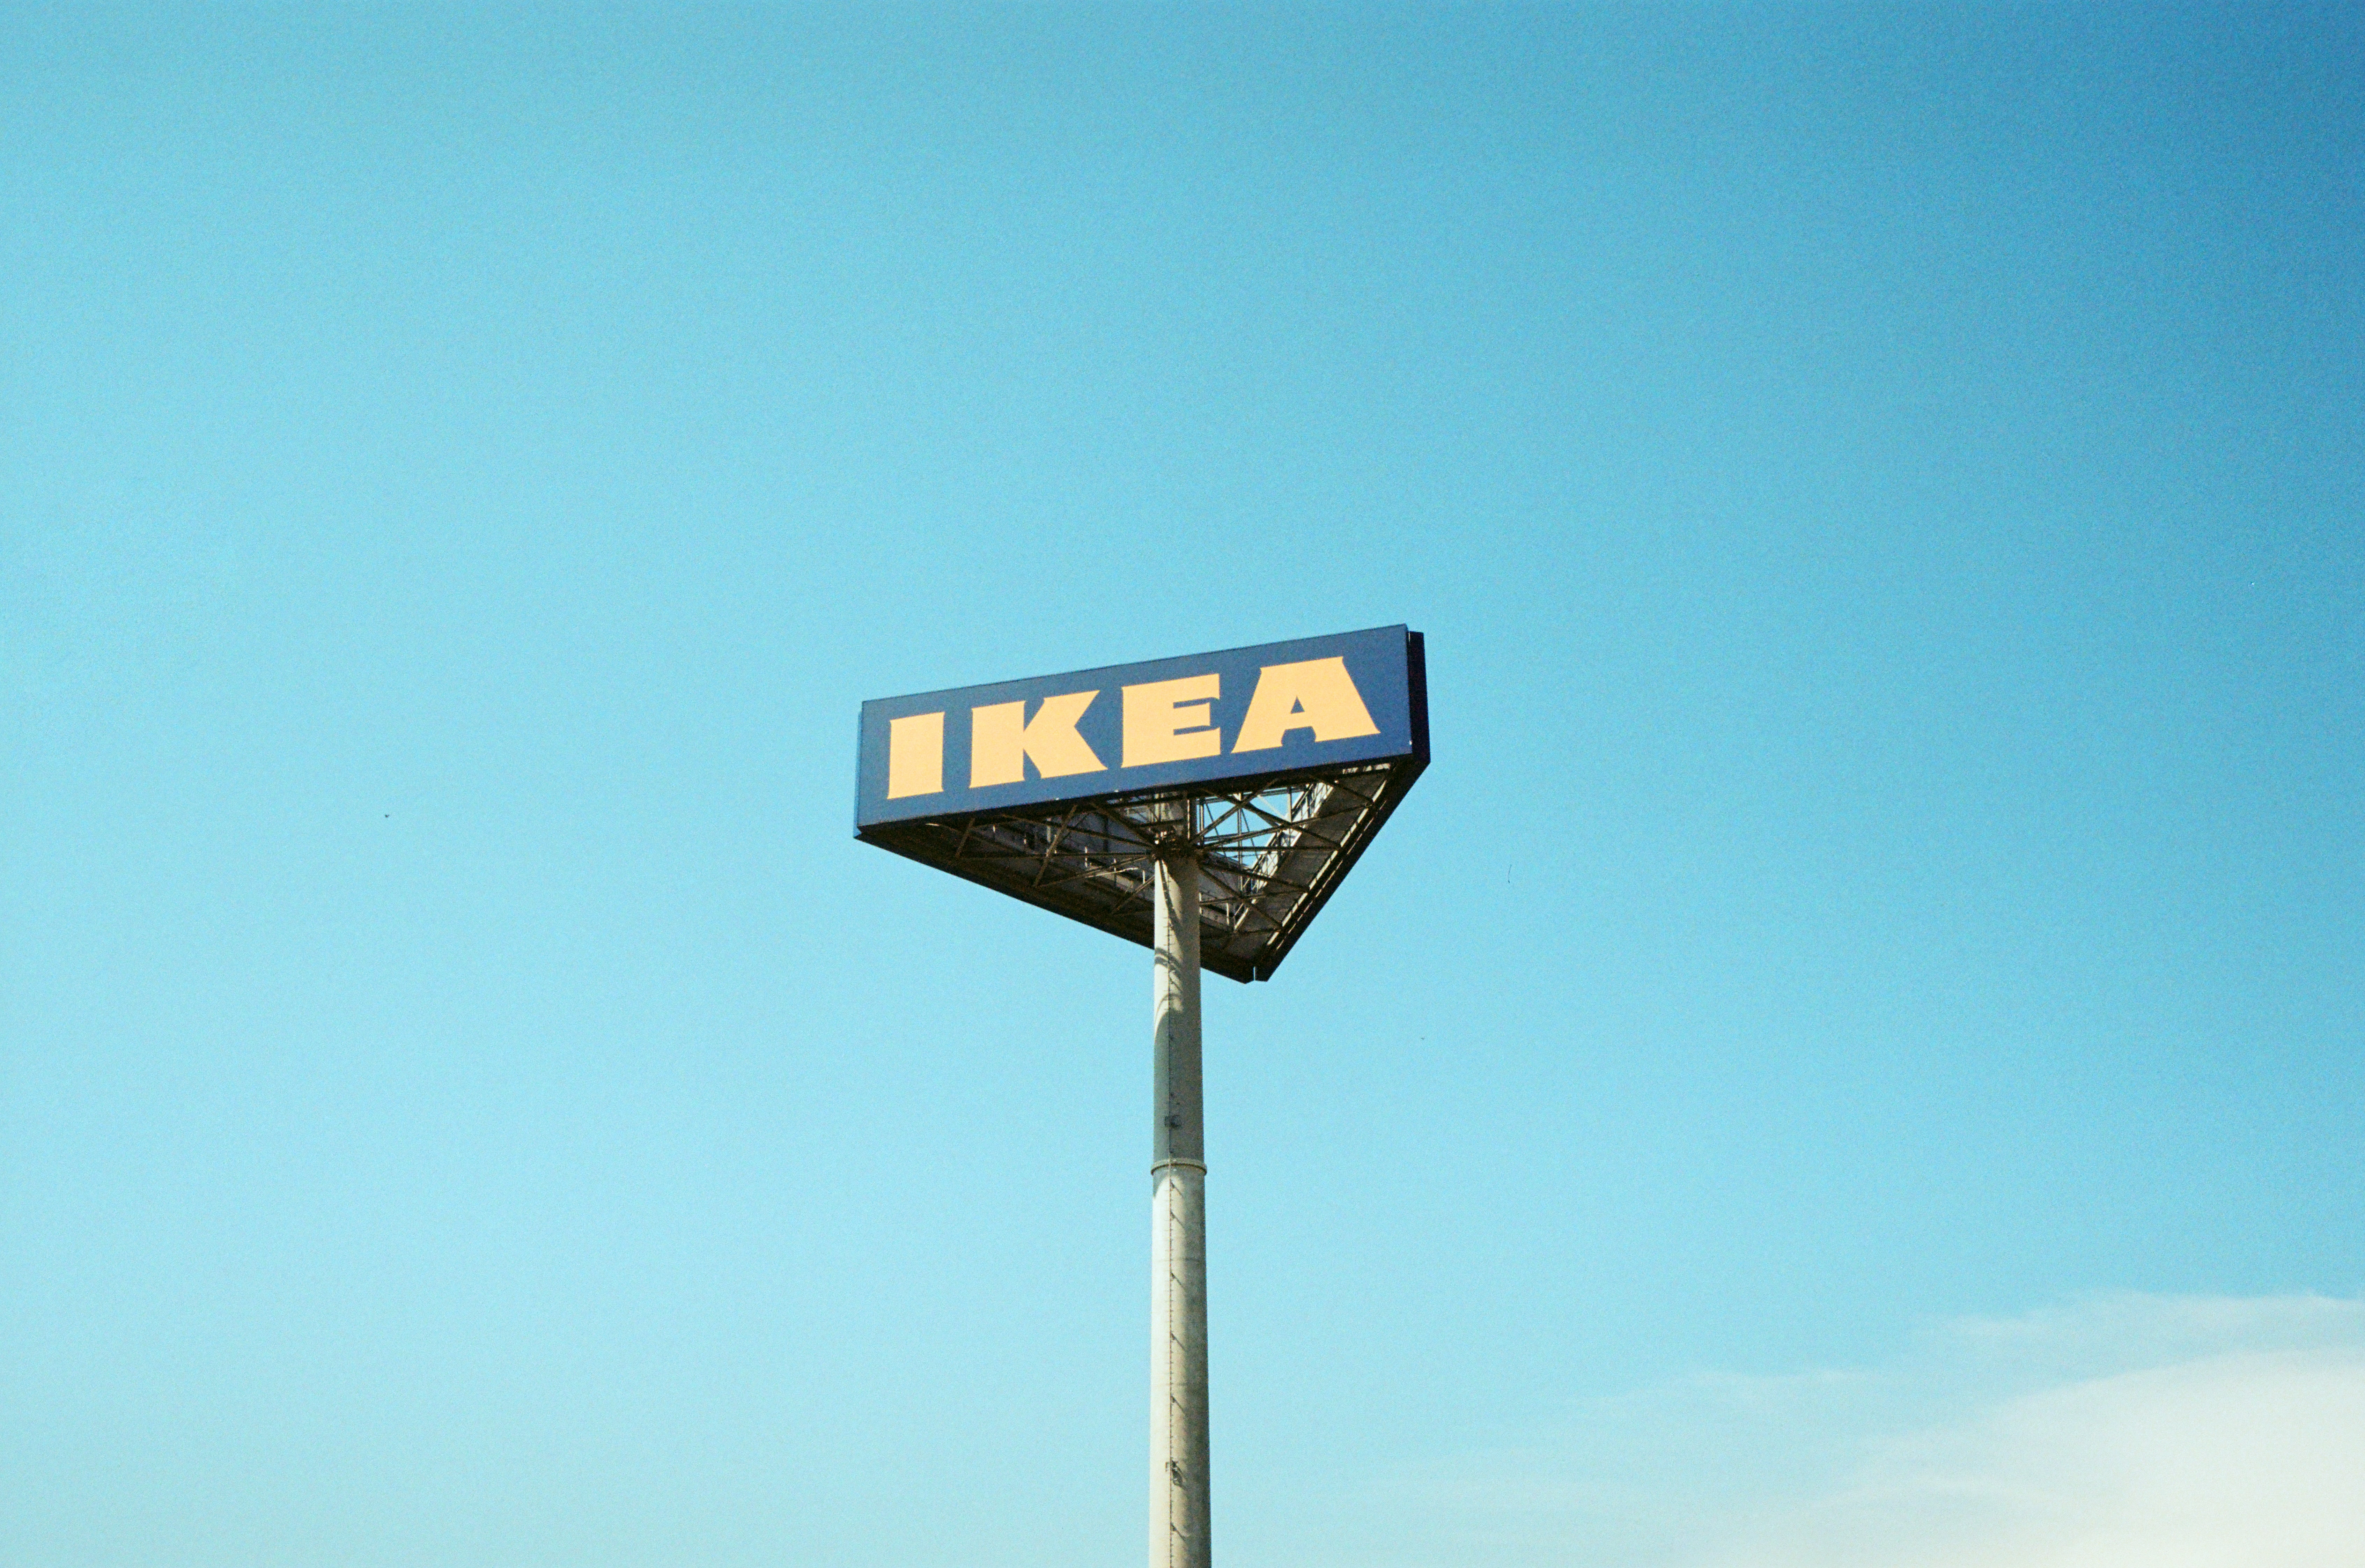 IKEA berinvestasi miliaran dalam memperluas ritel online – MNews – medianet.at